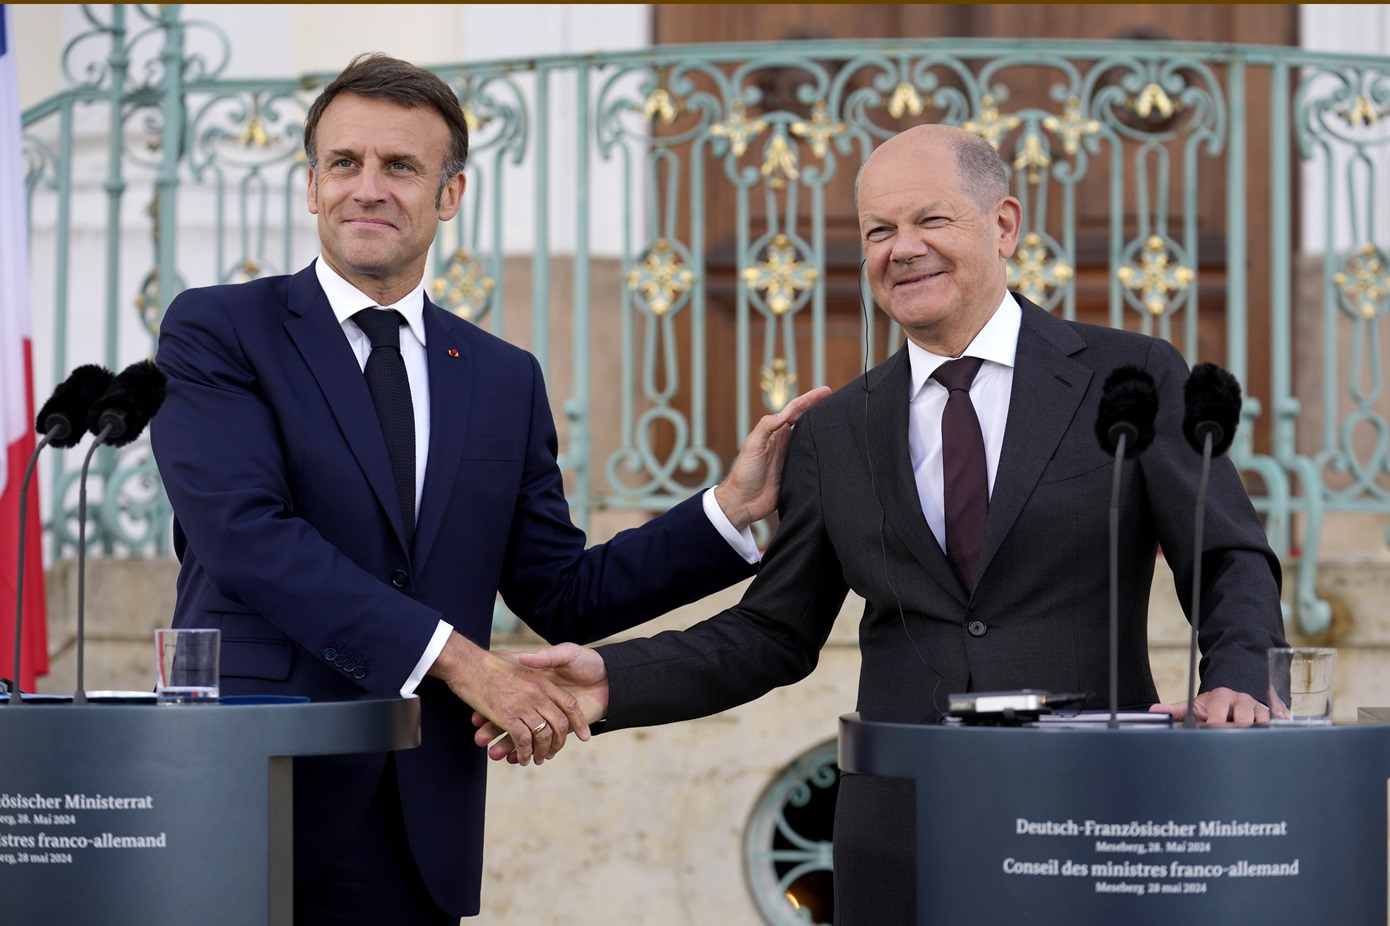 Συνεργασία μεταξύ Γαλλίας και Γερμανίας διαβεβαίωσαν Σολτς και Μακρόν &#8211; «Θα συμφωνούμε πάντα»